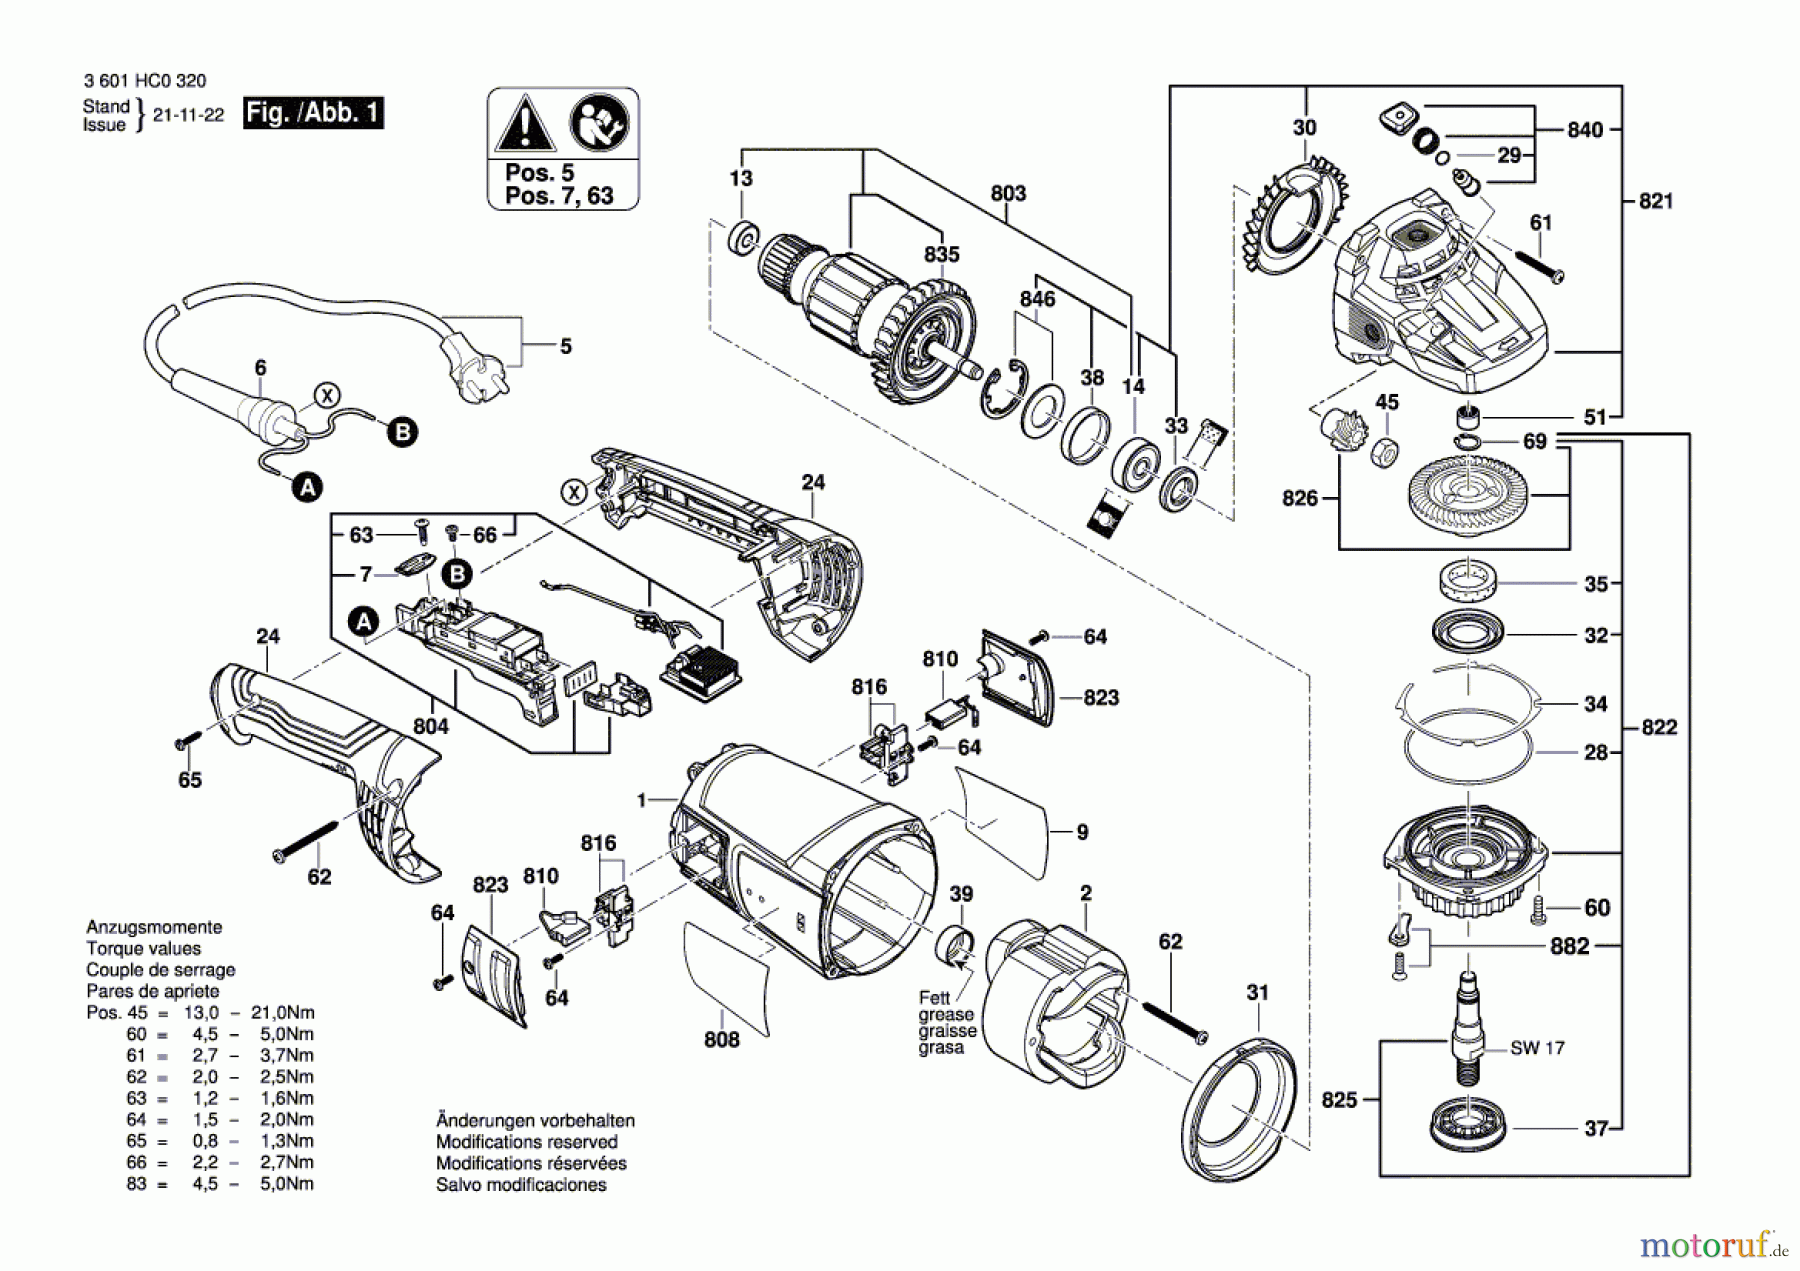  Bosch Werkzeug Winkelschleifer GWS 22-180 J Seite 1